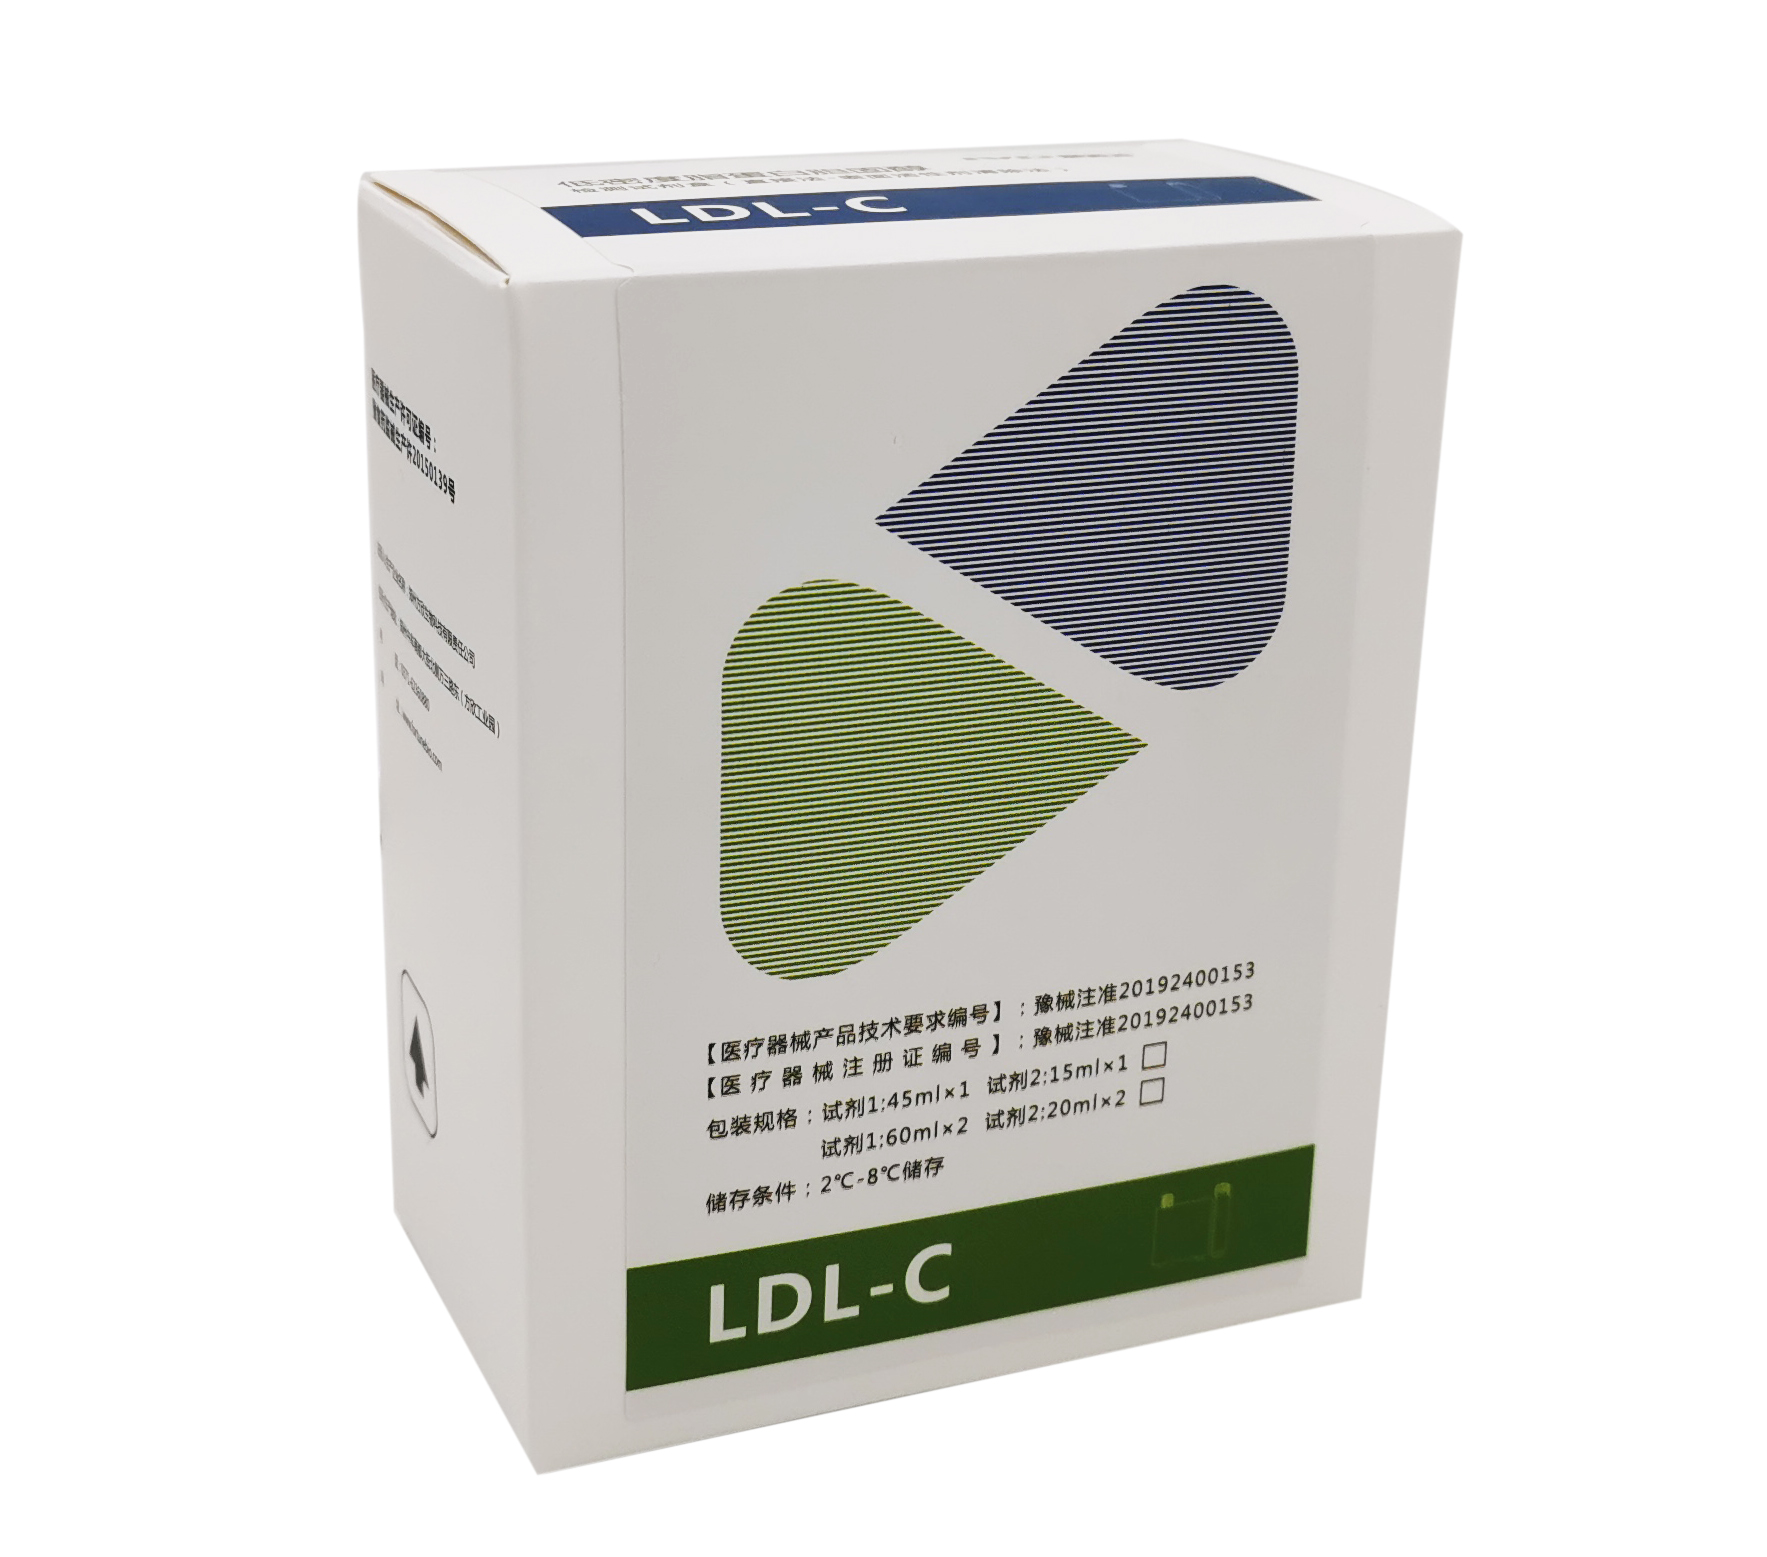 低密度脂蛋白胆固醇检测试剂盒